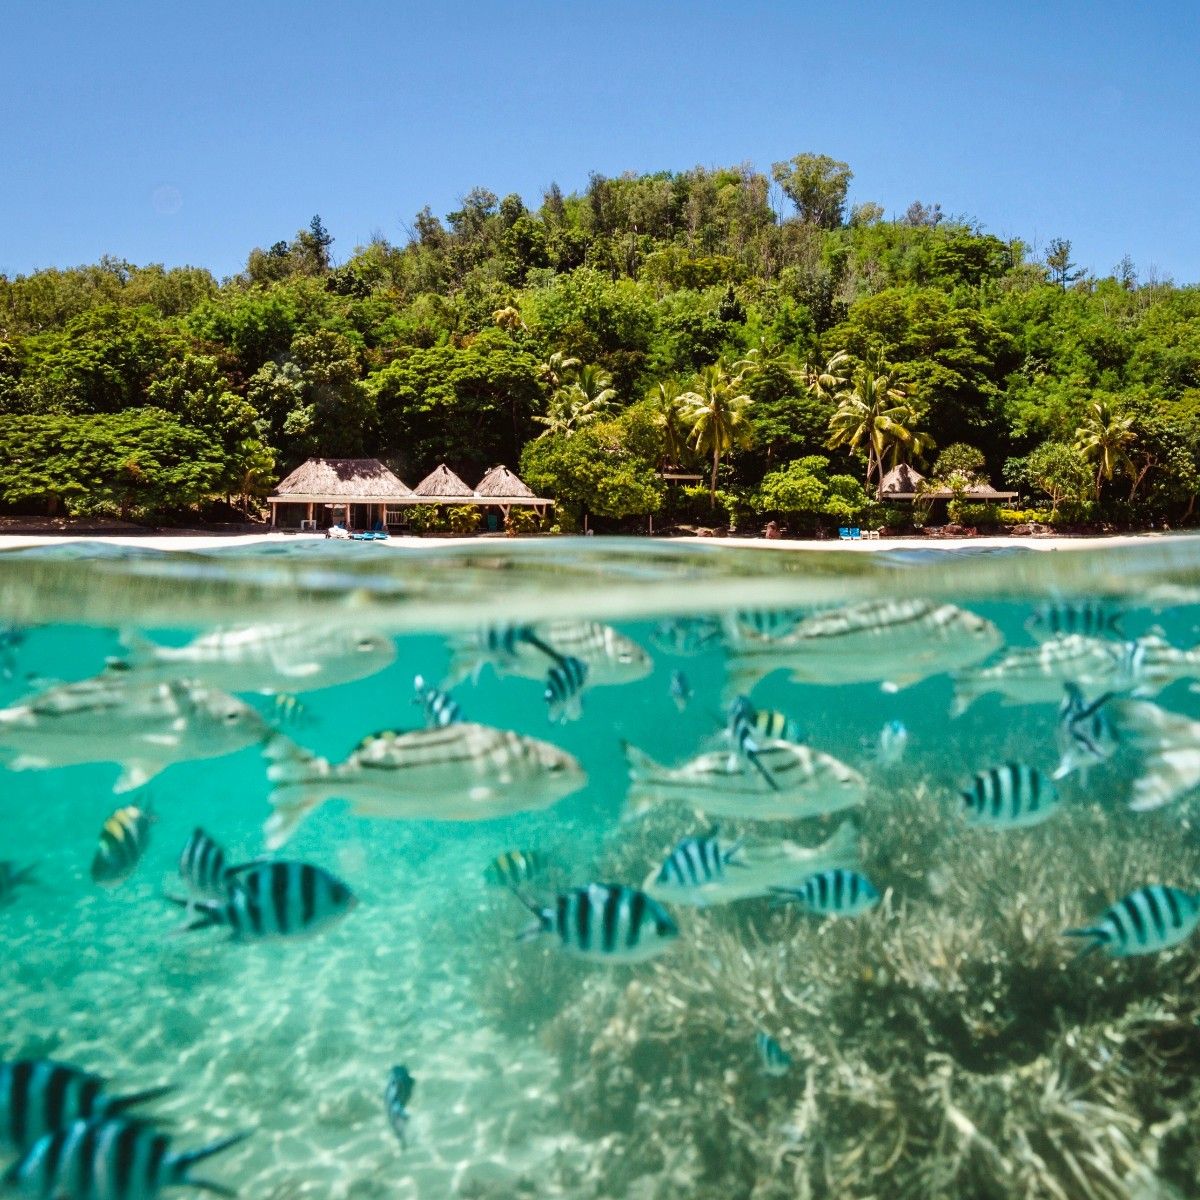 turtlefiji - Tourism Fiji